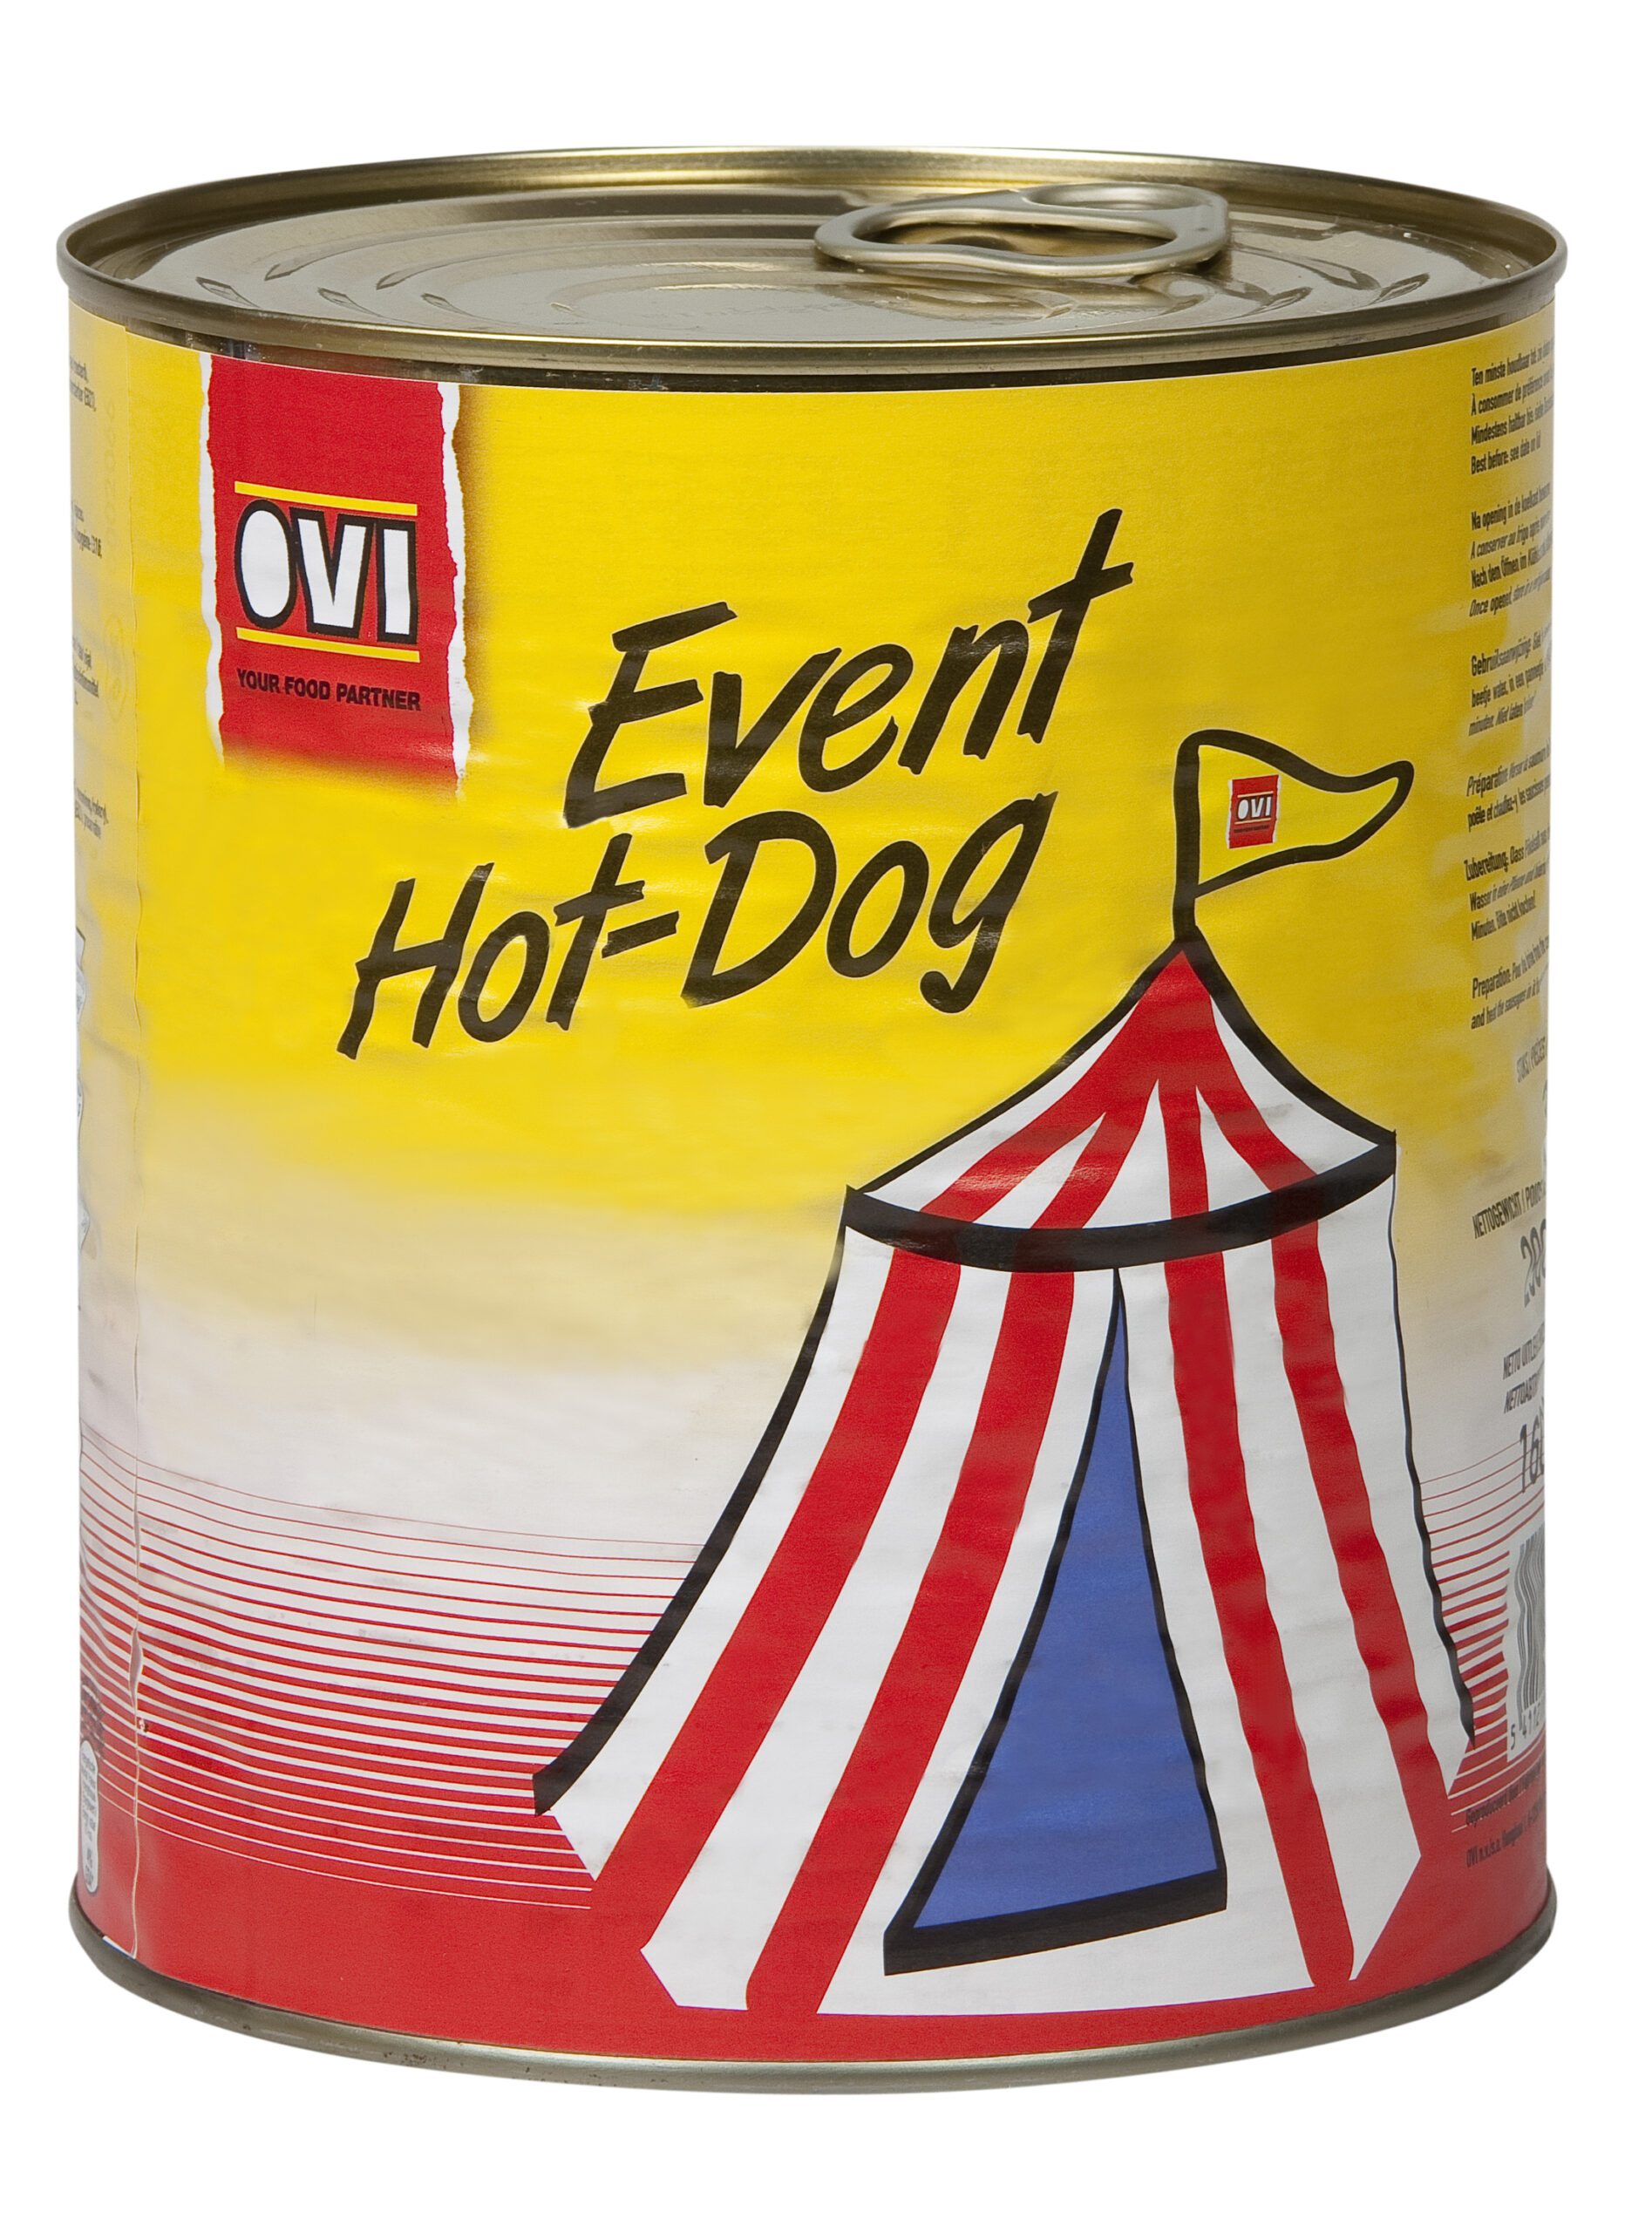 Event Hotdog 32 x 50 g OVI